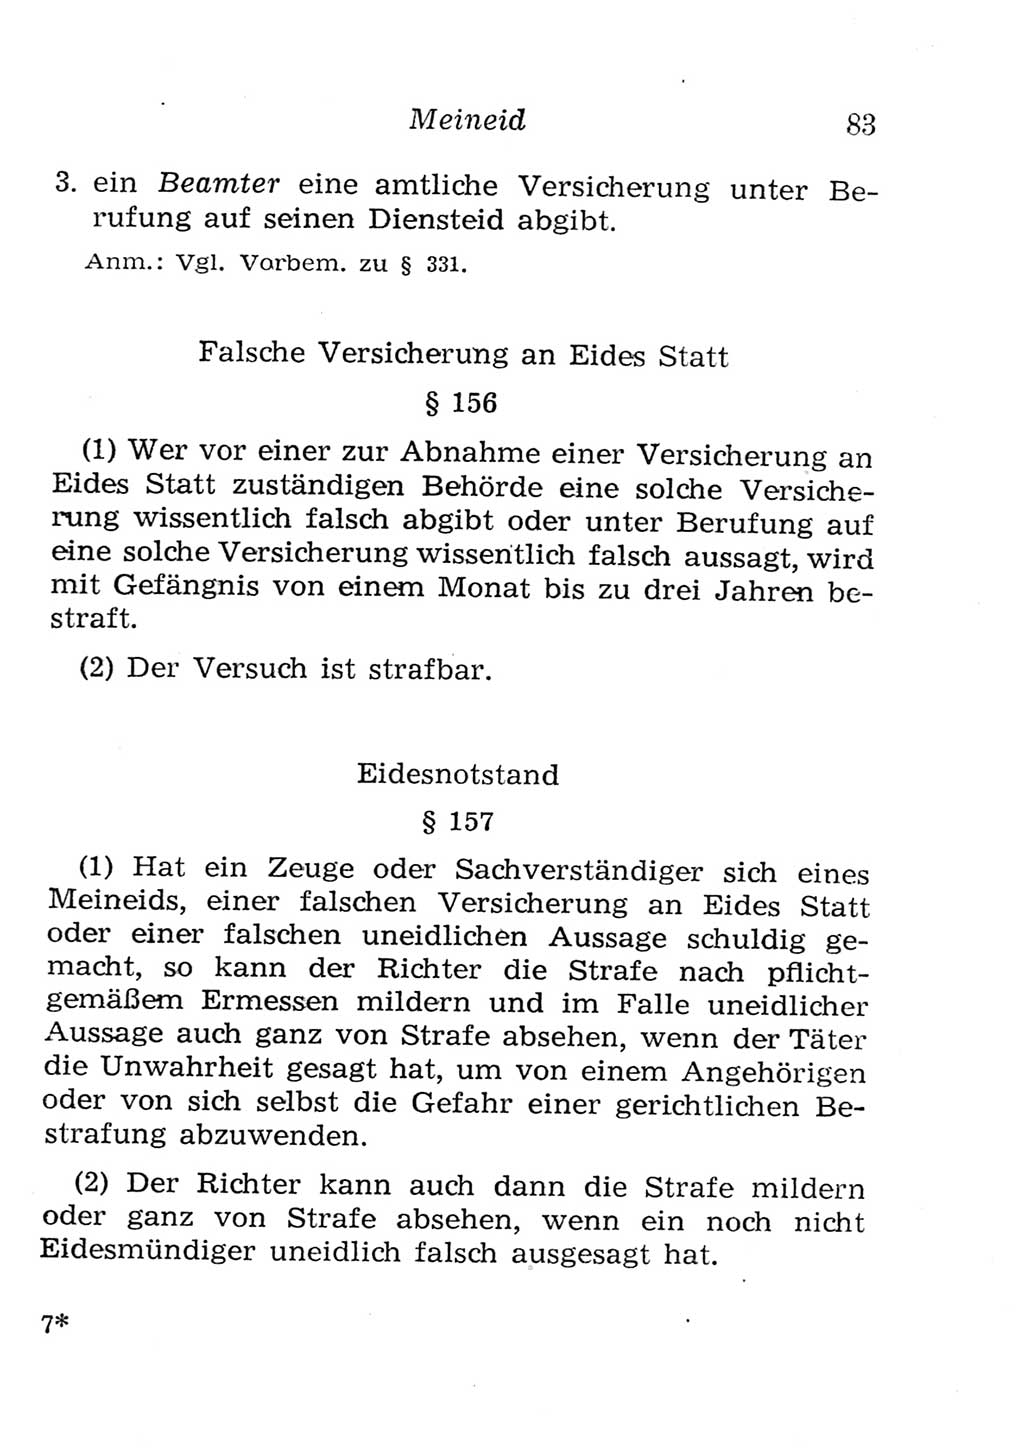 Strafgesetzbuch (StGB) und andere Strafgesetze [Deutsche Demokratische Republik (DDR)] 1957, Seite 83 (StGB Strafges. DDR 1957, S. 83)